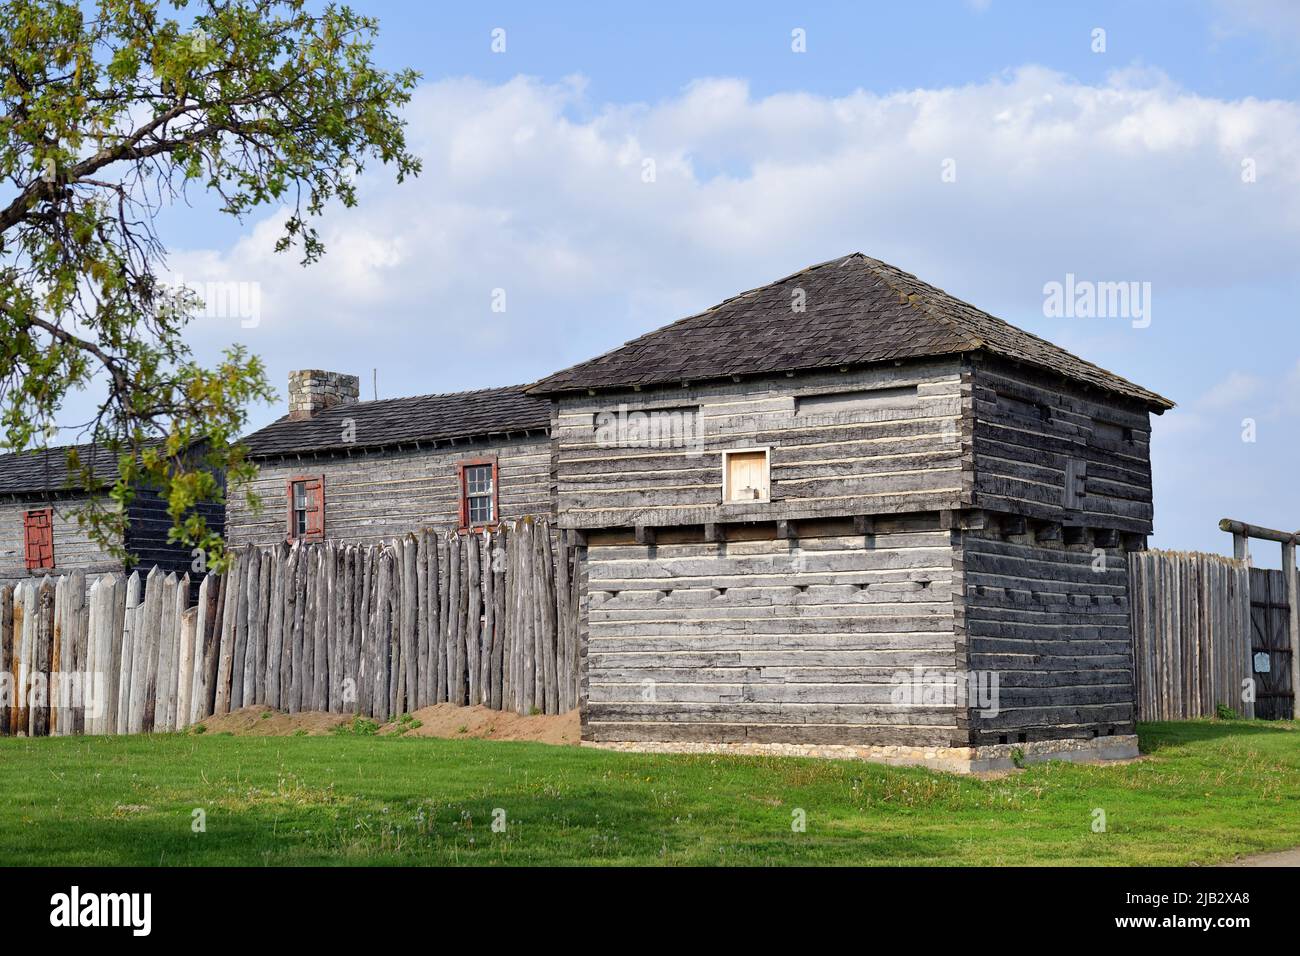 Fort Madison, Iowa, Estados Unidos. Old Fort Madison, construido en 1808, está situado a lo largo del río Mississippi en la esquina sureste del estado de Iowa. Foto de stock